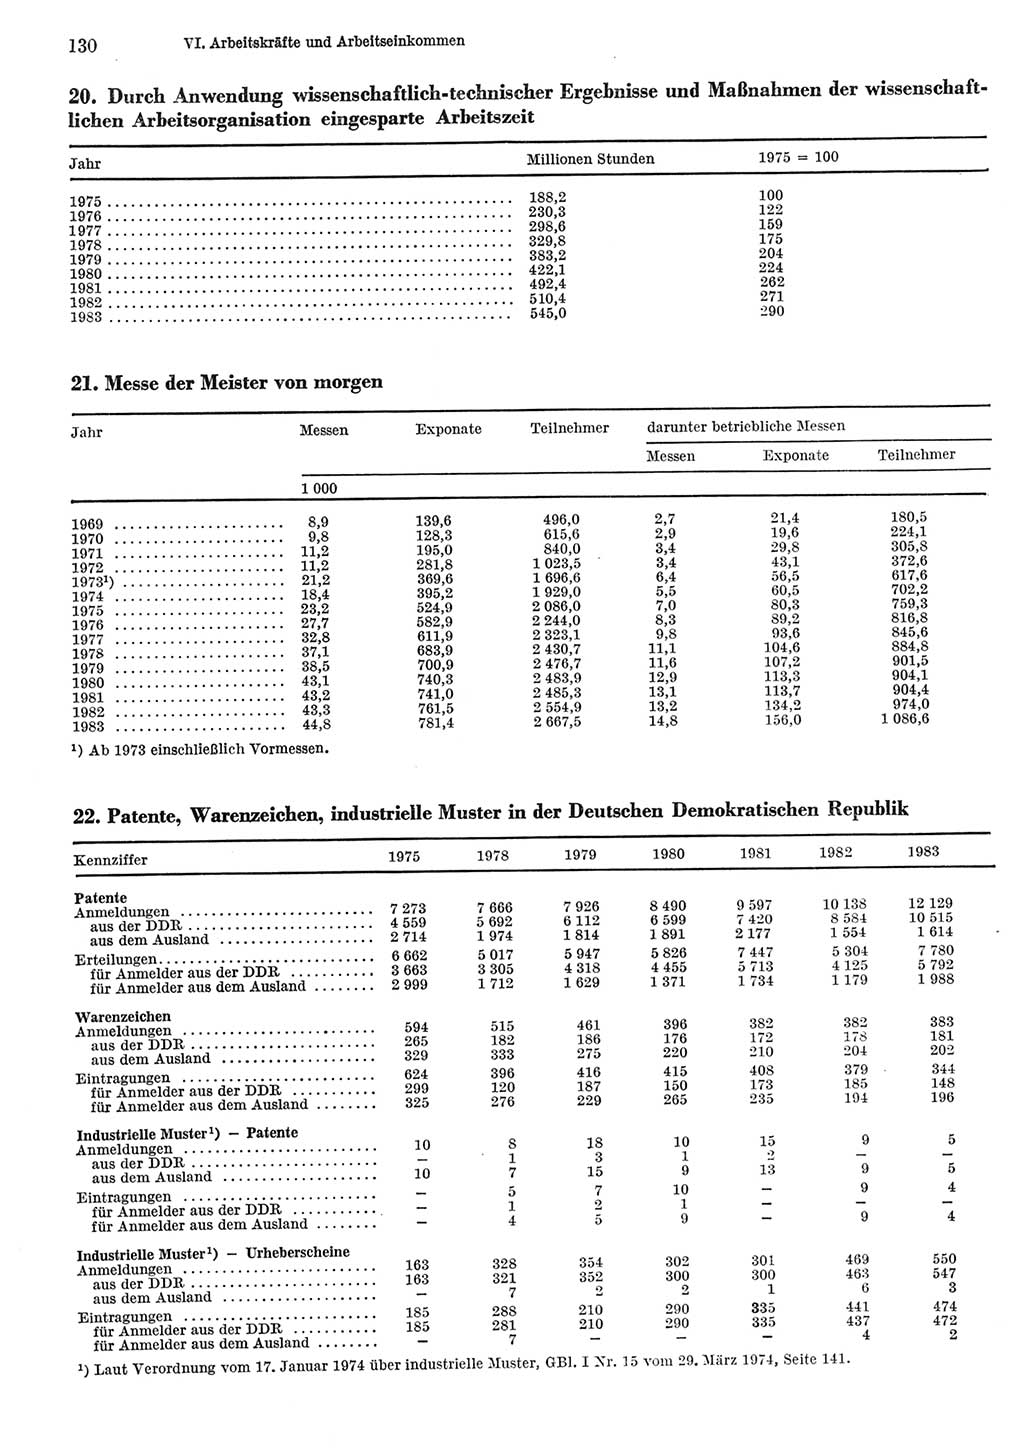 Statistisches Jahrbuch der Deutschen Demokratischen Republik (DDR) 1984, Seite 130 (Stat. Jb. DDR 1984, S. 130)